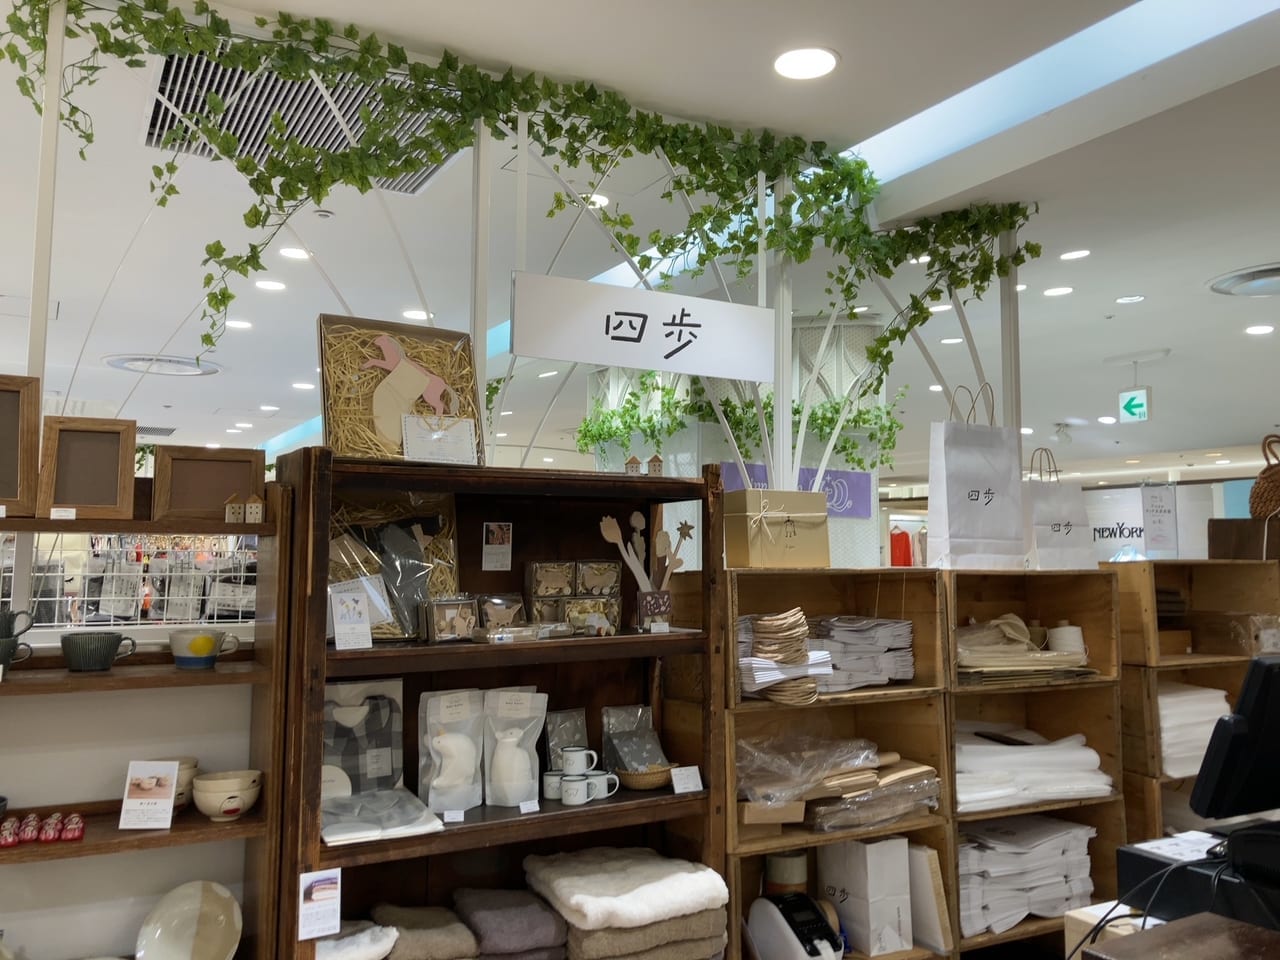 人気雑貨店『四歩』が国分寺にもオープンしました！お気に入りのひとつが見つかるかも♪